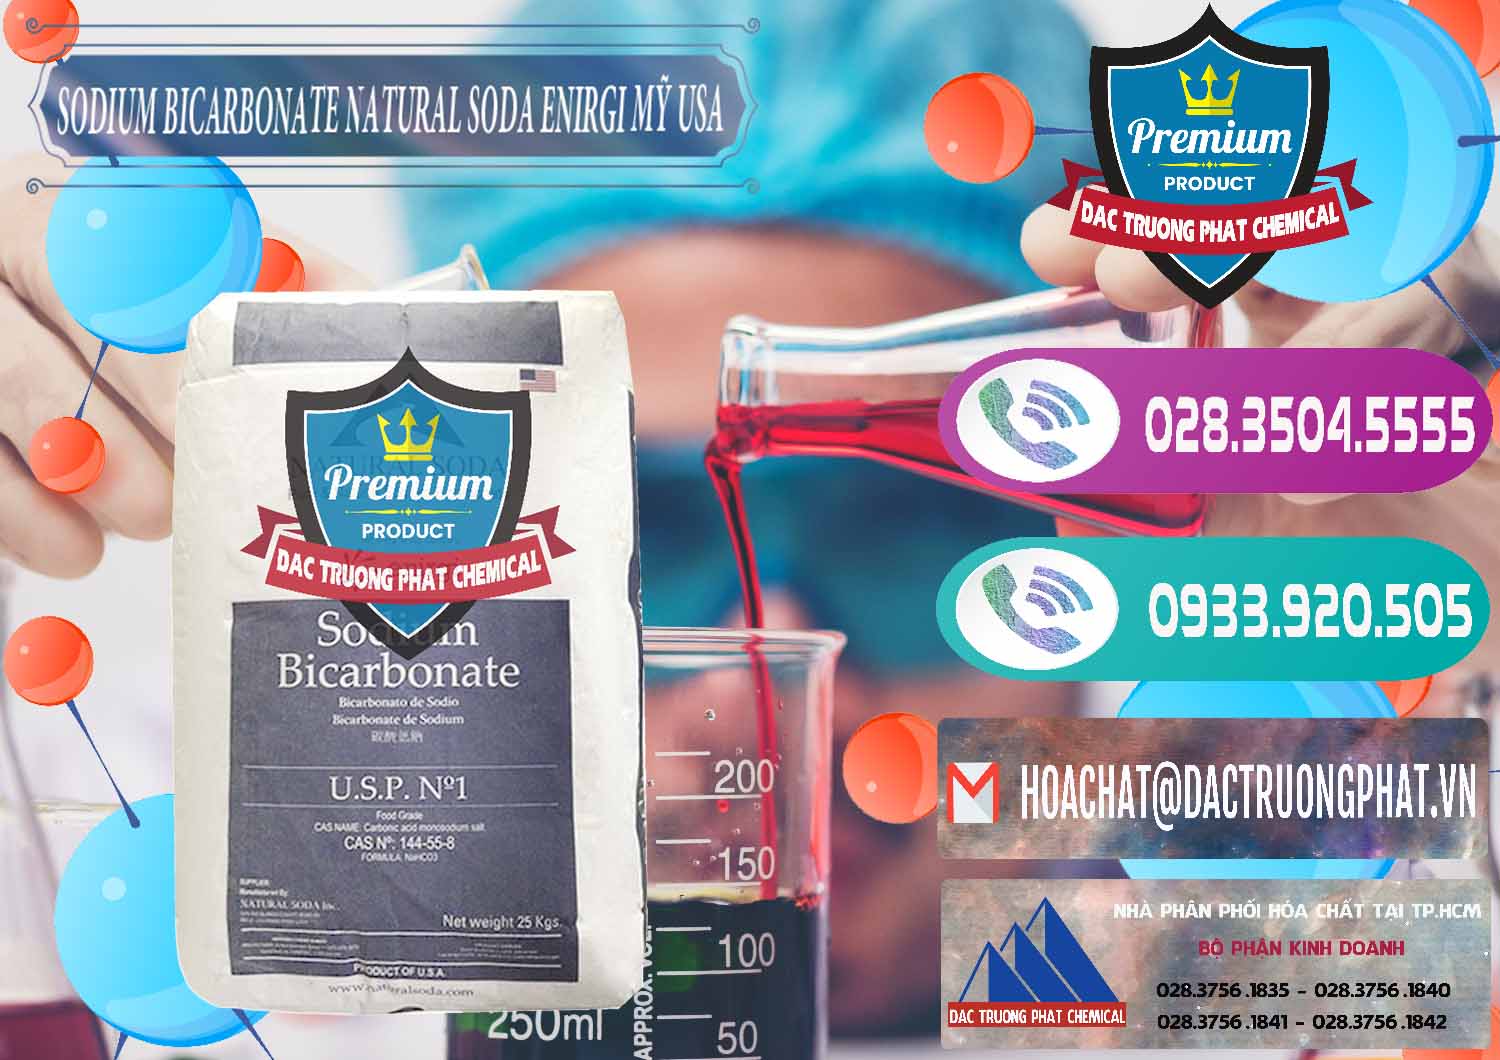 Nơi chuyên cung ứng và bán Sodium Bicarbonate – Bicar NaHCO3 Food Grade Natural Soda Enirgi Mỹ USA - 0257 - Công ty chuyên cung ứng - phân phối hóa chất tại TP.HCM - hoachatxulynuoc.com